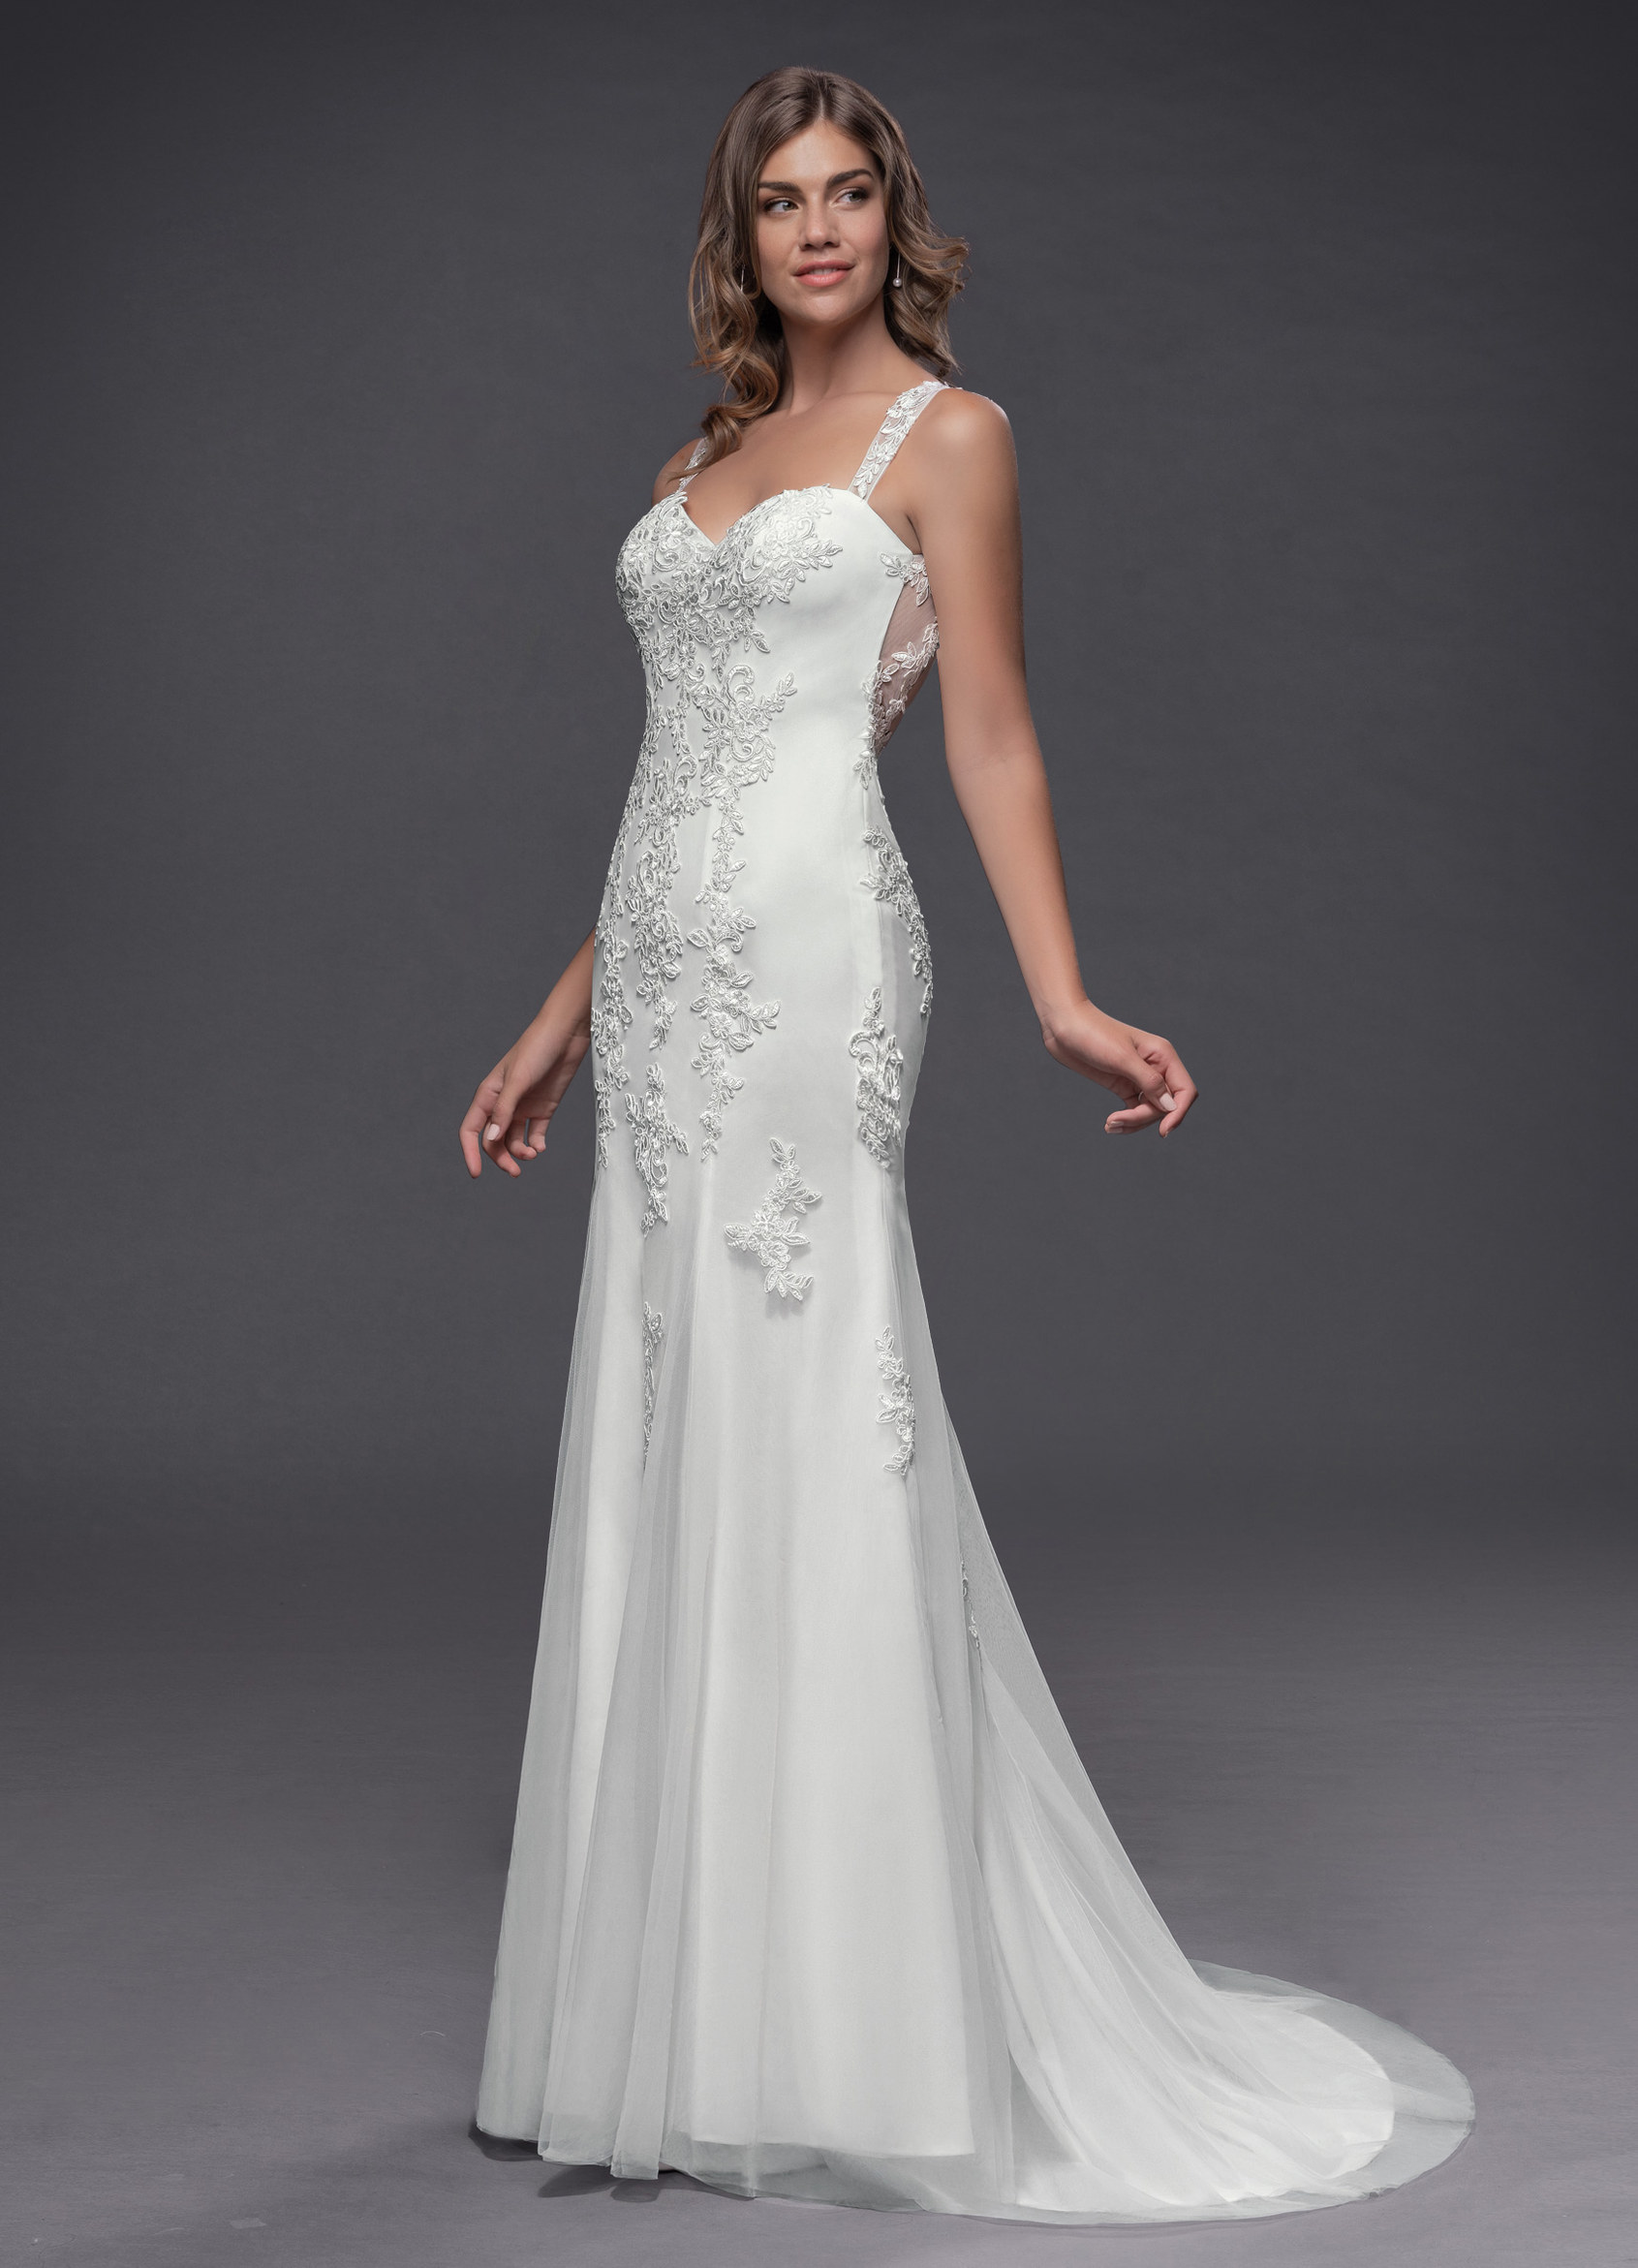 Azazie Anissa BG Wedding Dress - Diamond White/Nude | Azazie